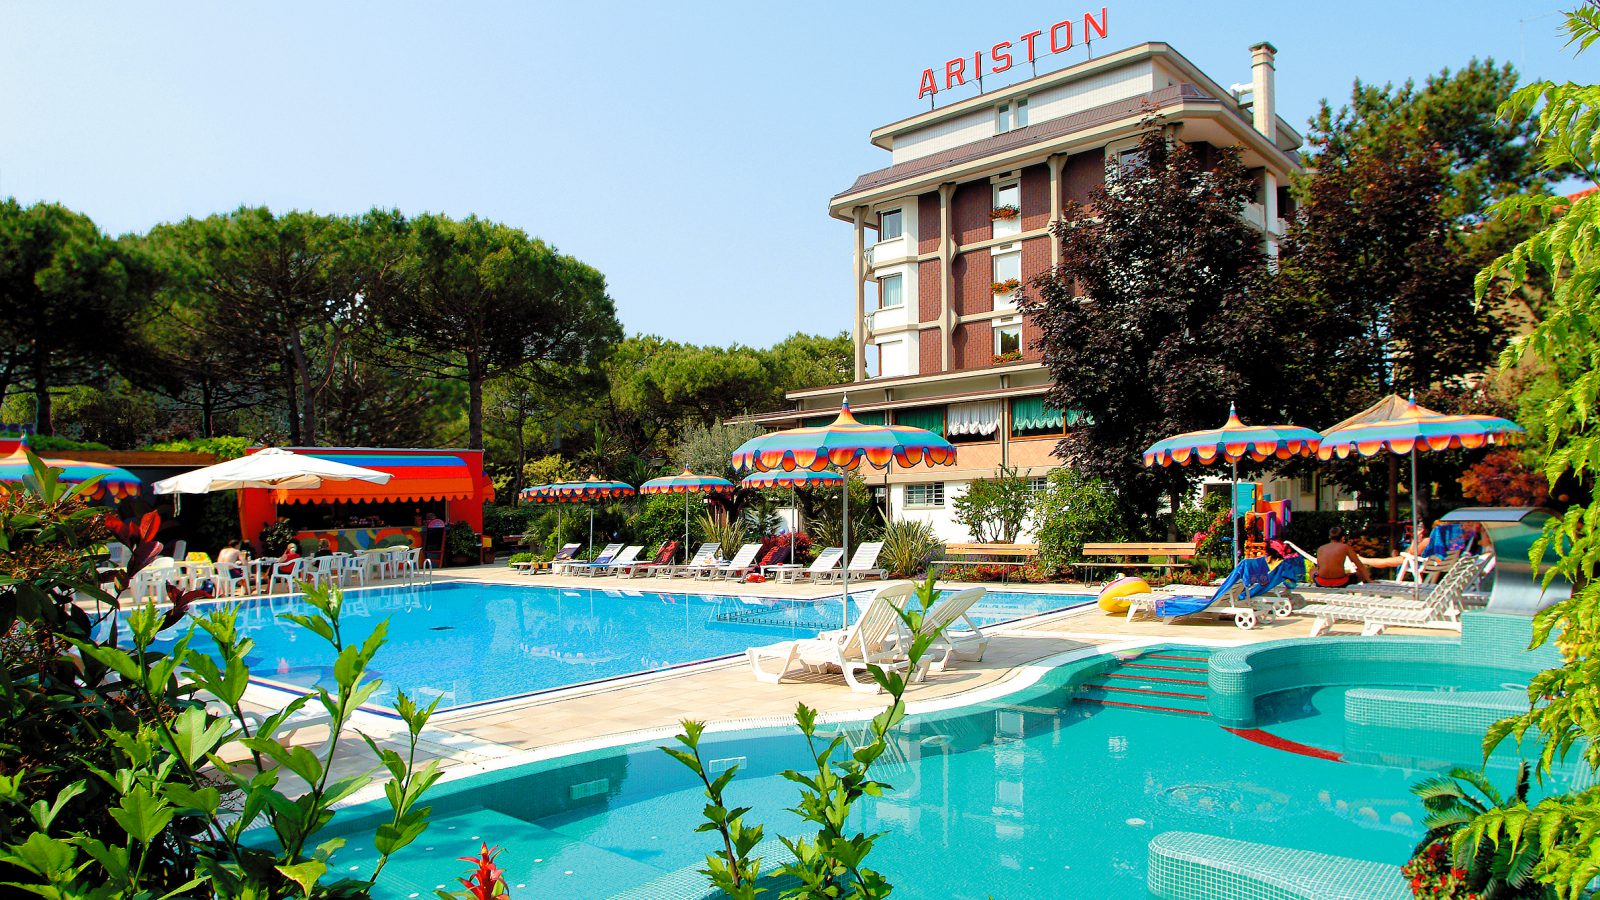 Adria  Sommerurlaub 2023:  Hotel Ariston Misano Adriatico 3 Nächte ab 189€